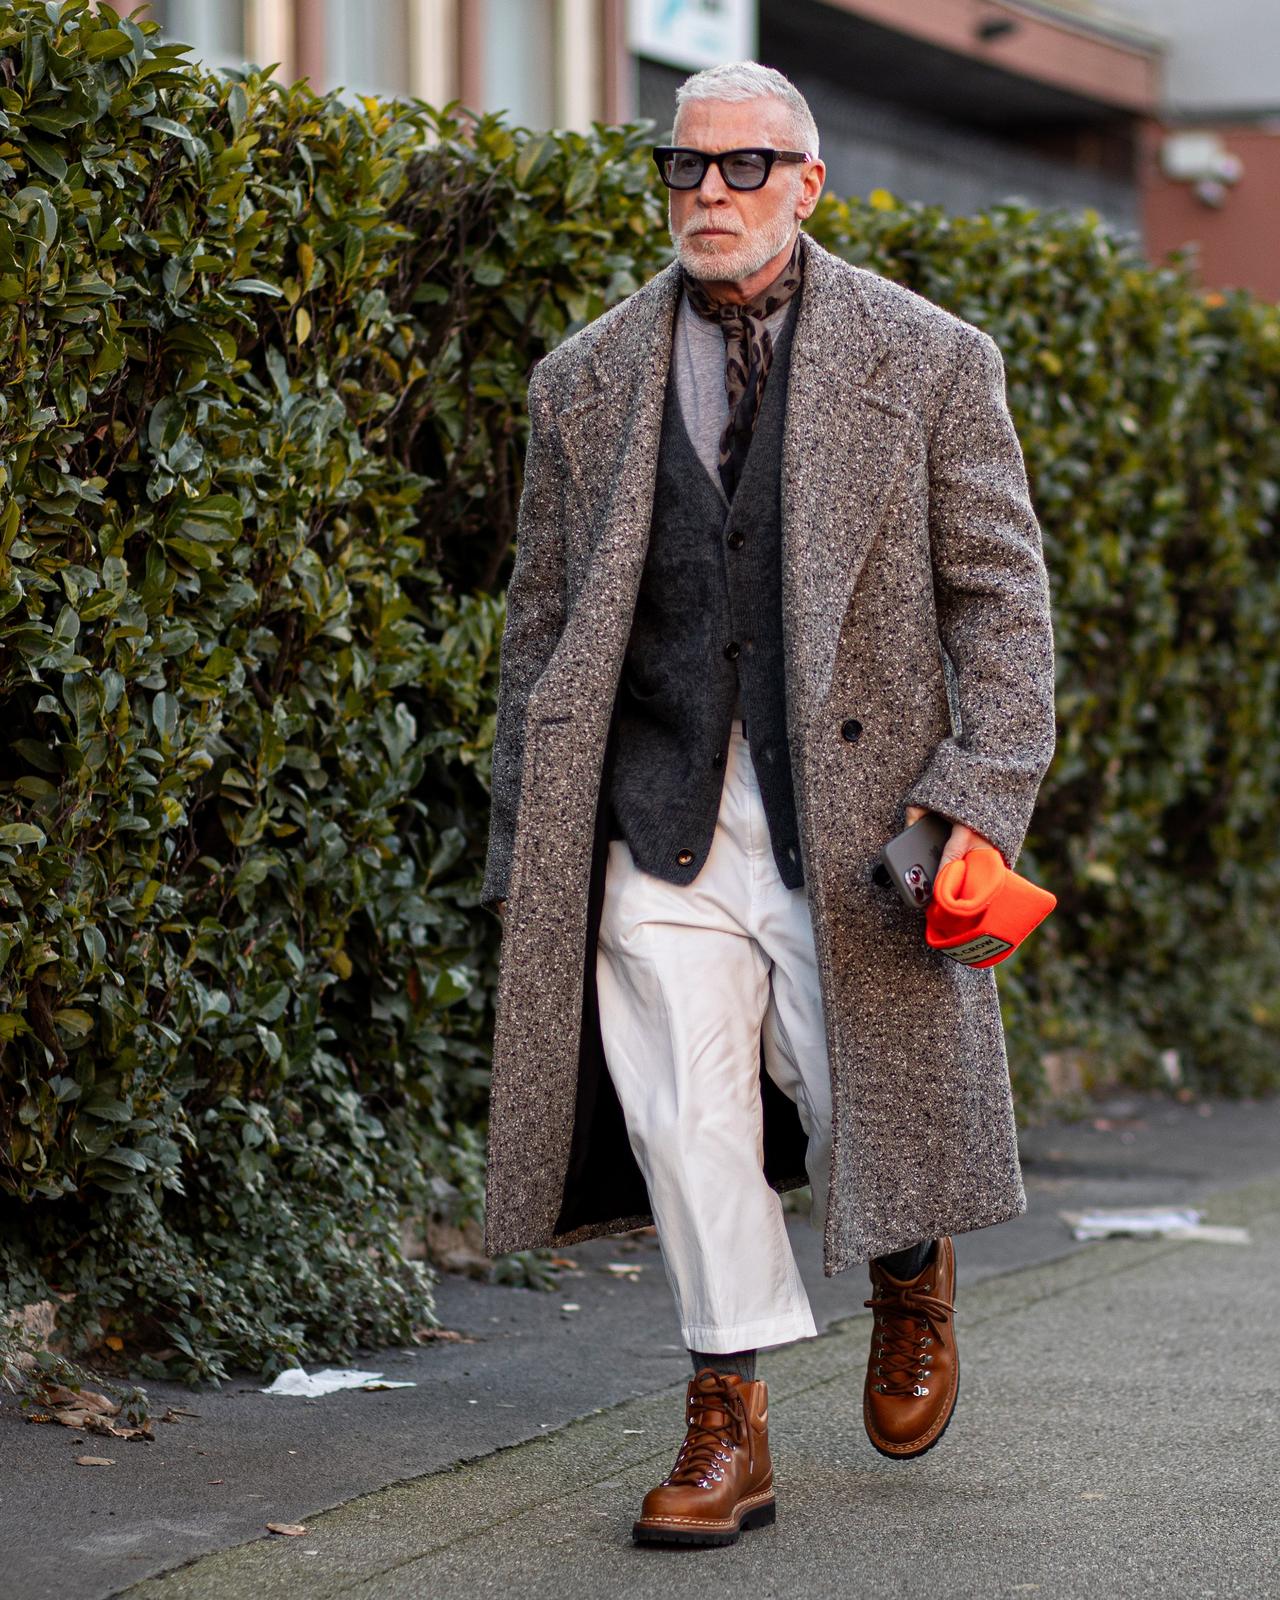 Un homme en manteau et cravate marchant sur un trottoir